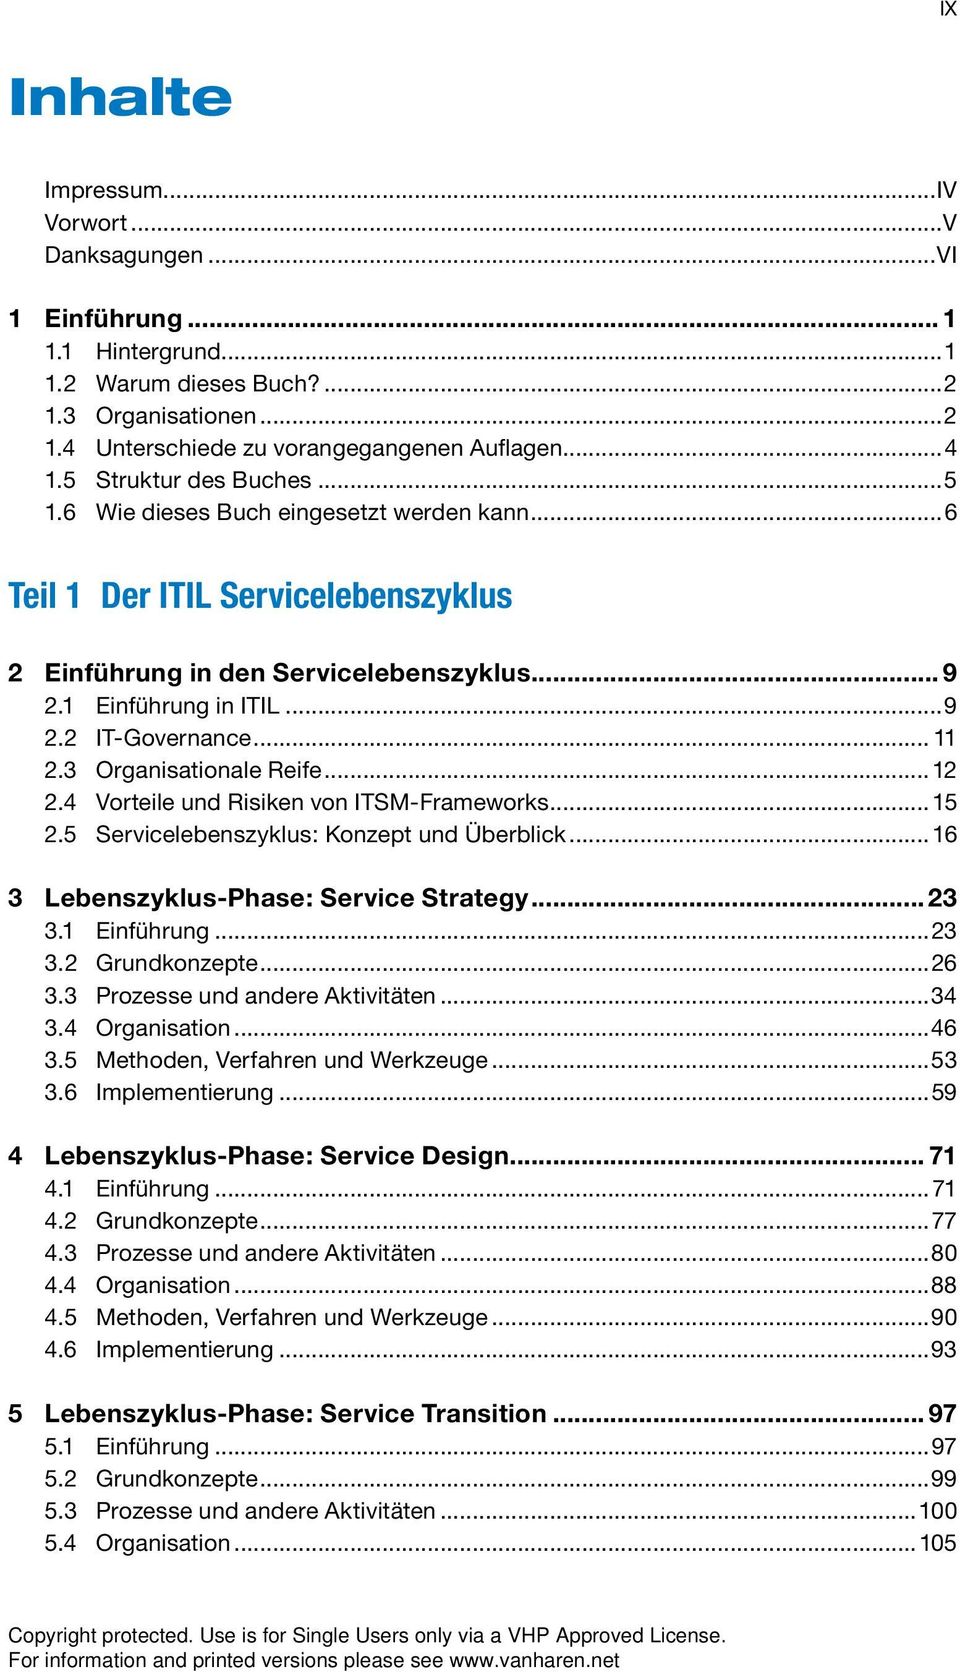 3 Organisationale Reife 12 2.4 Vorteile und Risiken von ITSM-Frameworks 15 2.5 Servicelebenszyklus: Konzept und Überblick 16 3 Lebenszyklus-Phase: Service Strategy 23 3.1 Einführung 23 3.